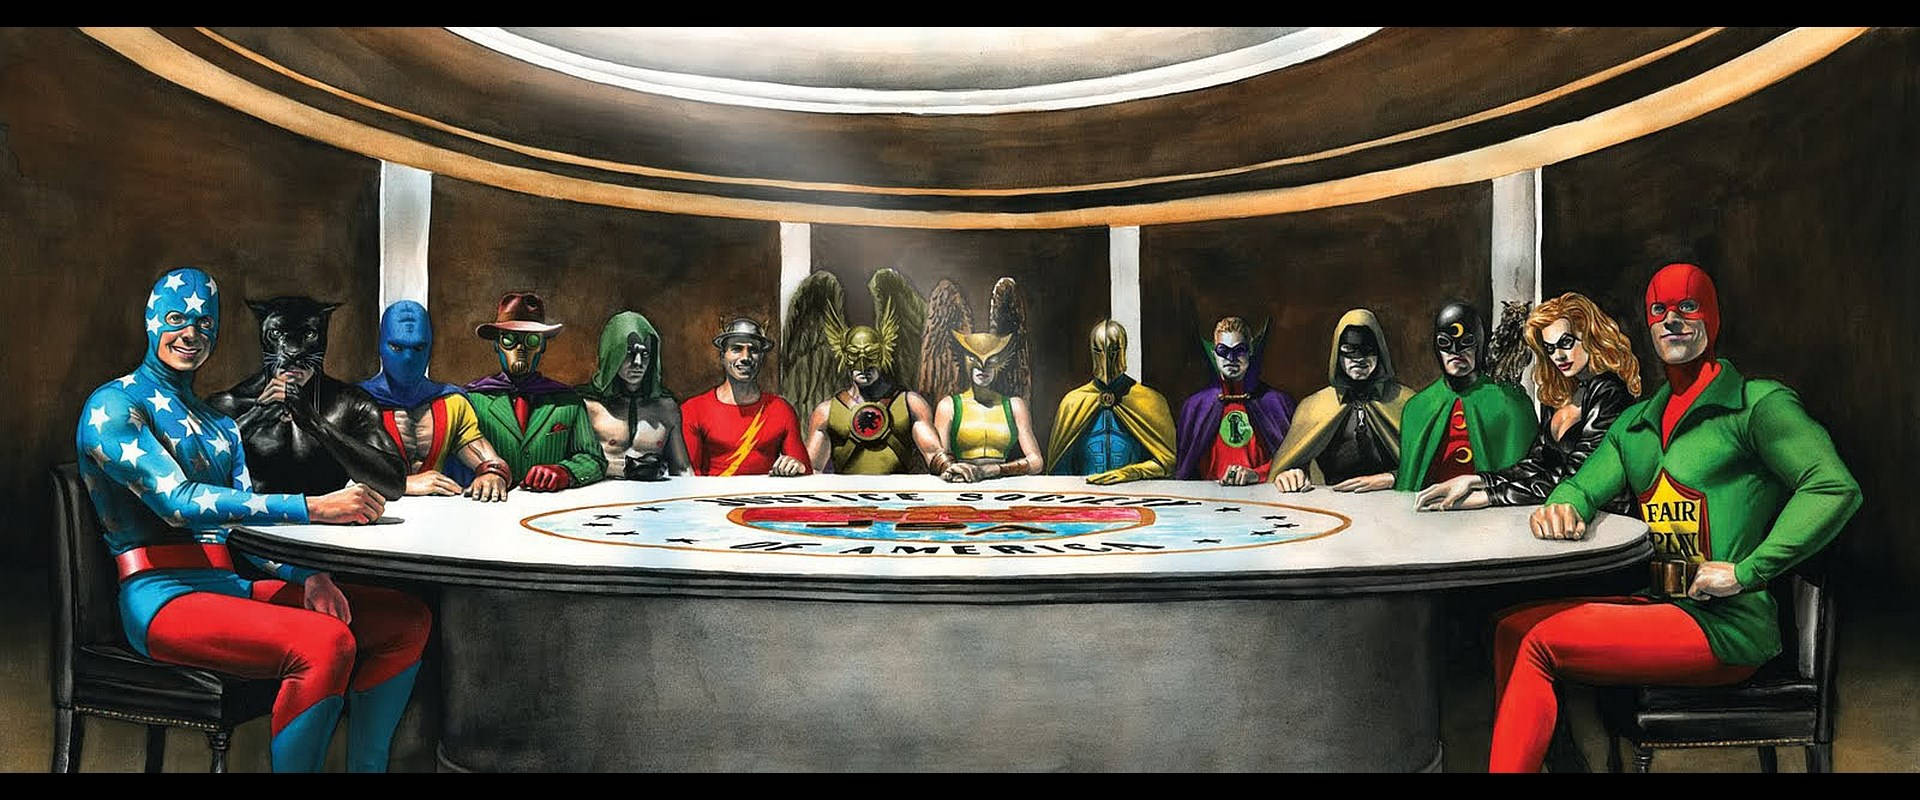 Cómic De Justice Society Of America En Smallville. Fondo de pantalla